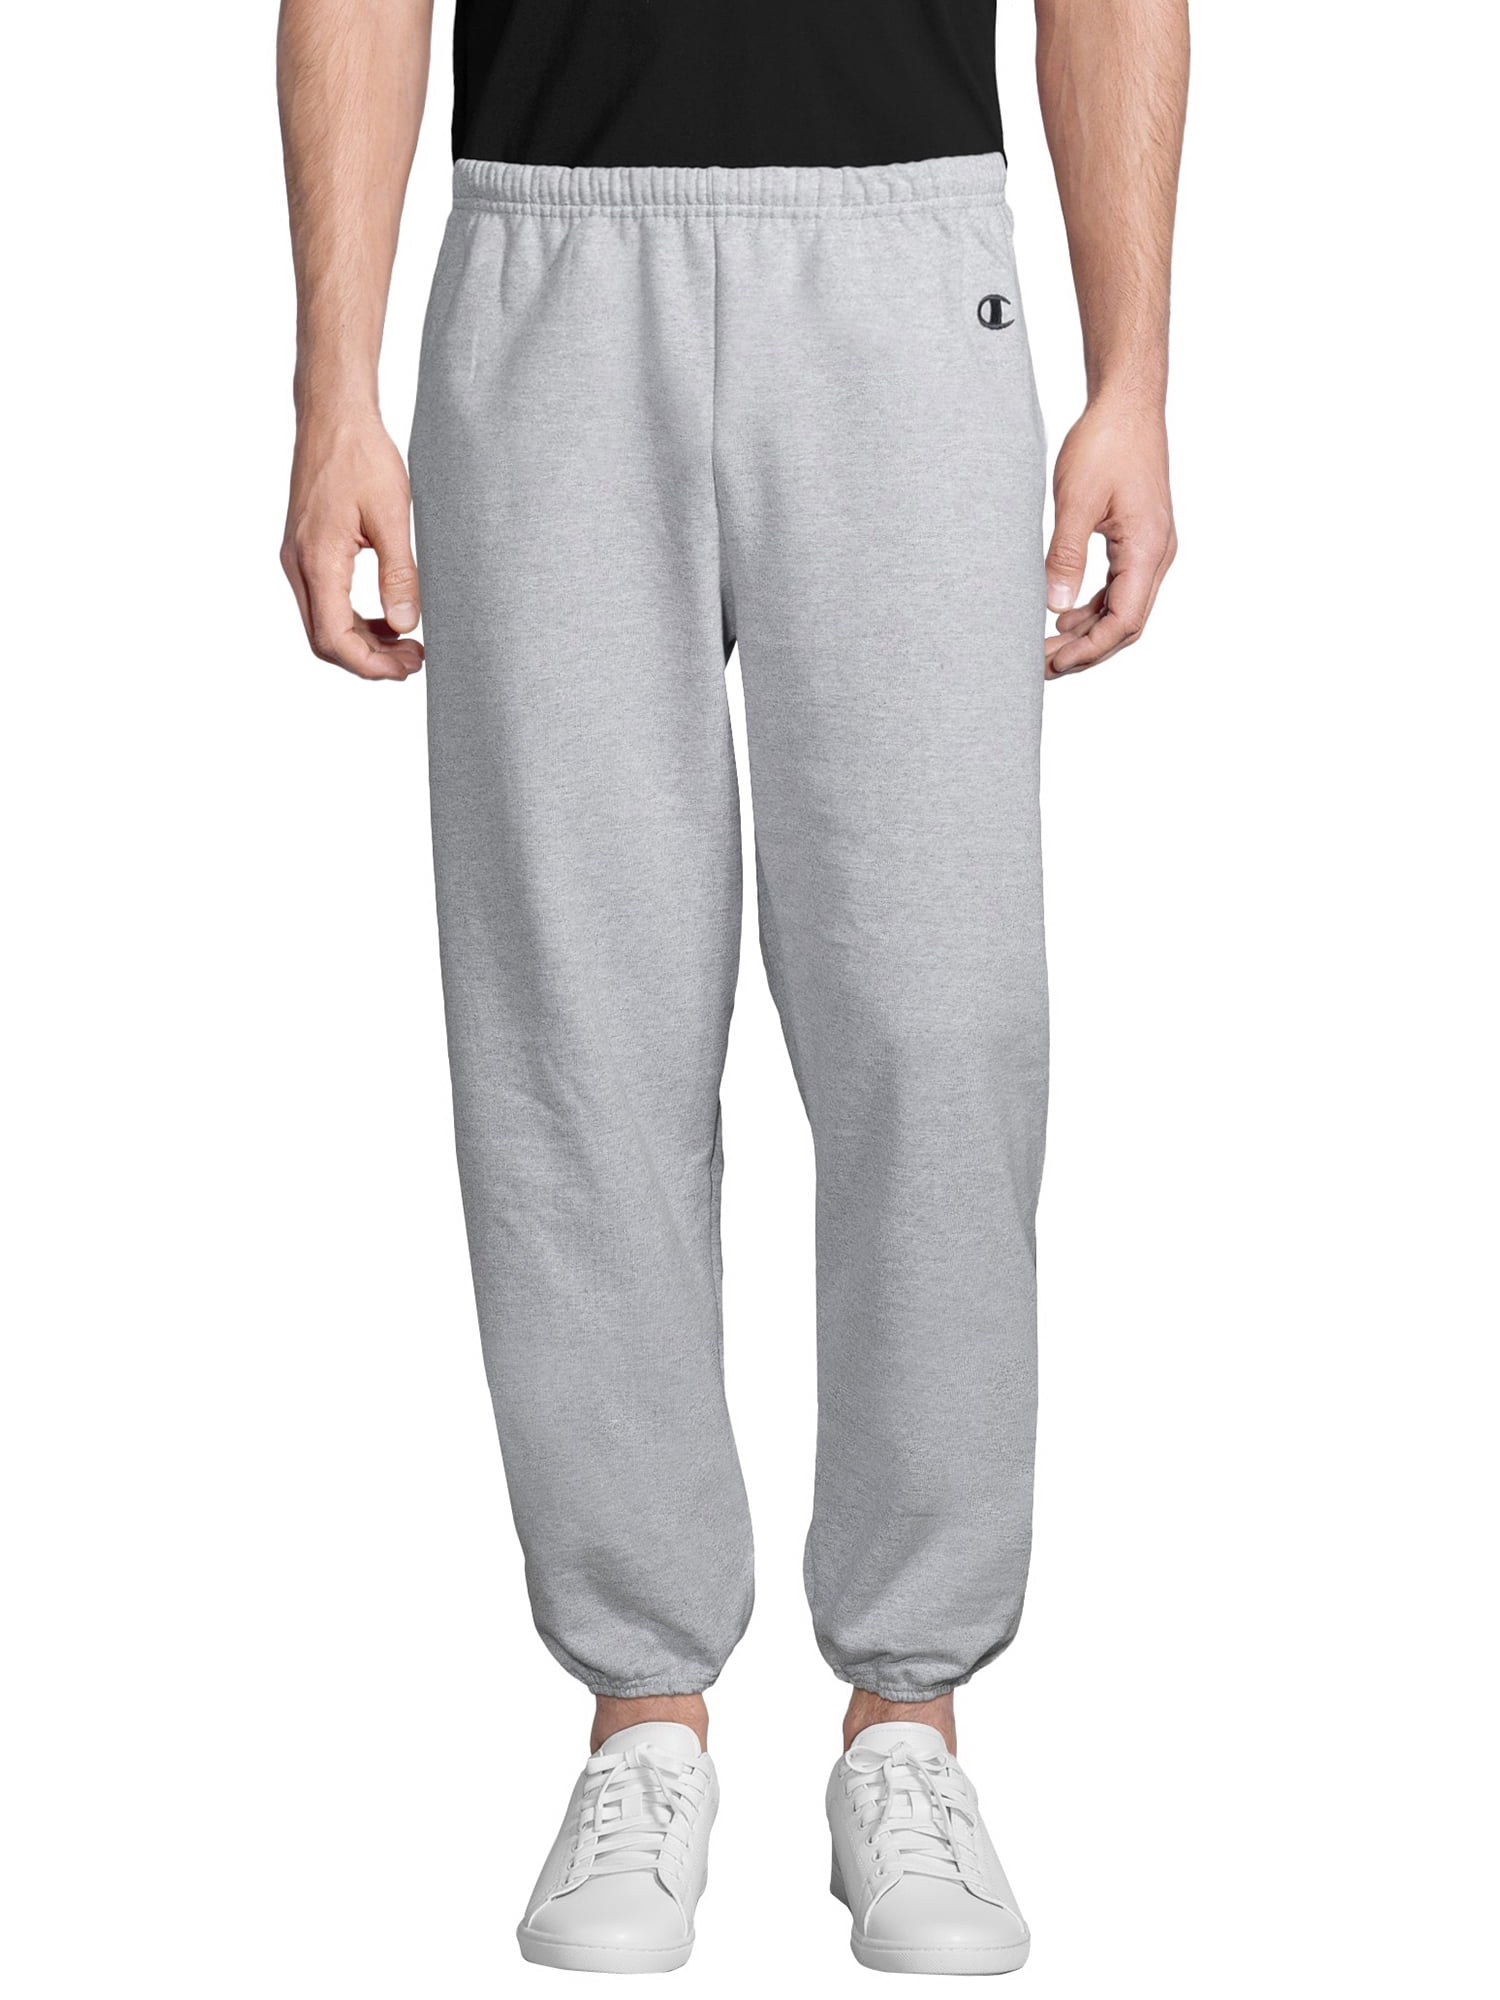 tak skal du have ude af drift Uændret Champion Men's Cotton Max Fleece Sweatpants with Pockets - Walmart.com